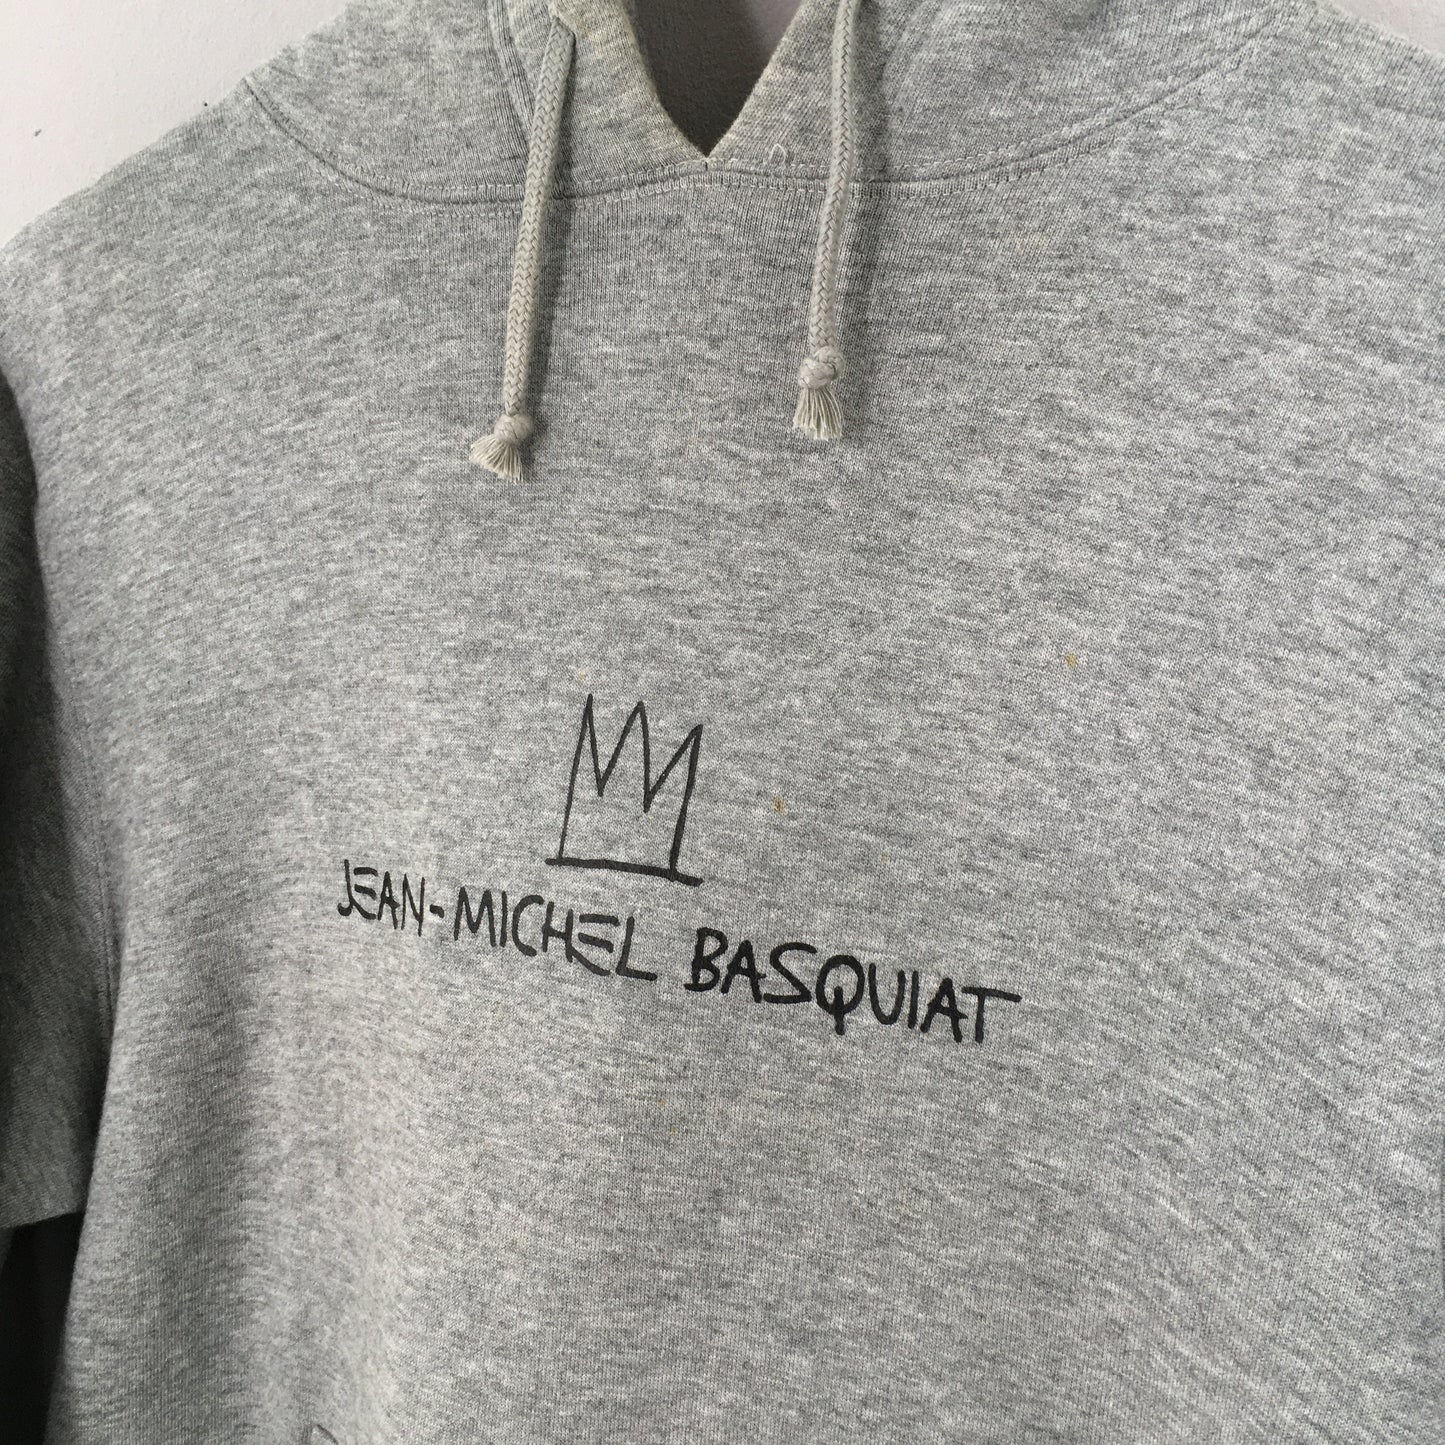 Jean Michel Basquiat Jersey Joe Walcott Pop Art Sweater Hoodie Size S